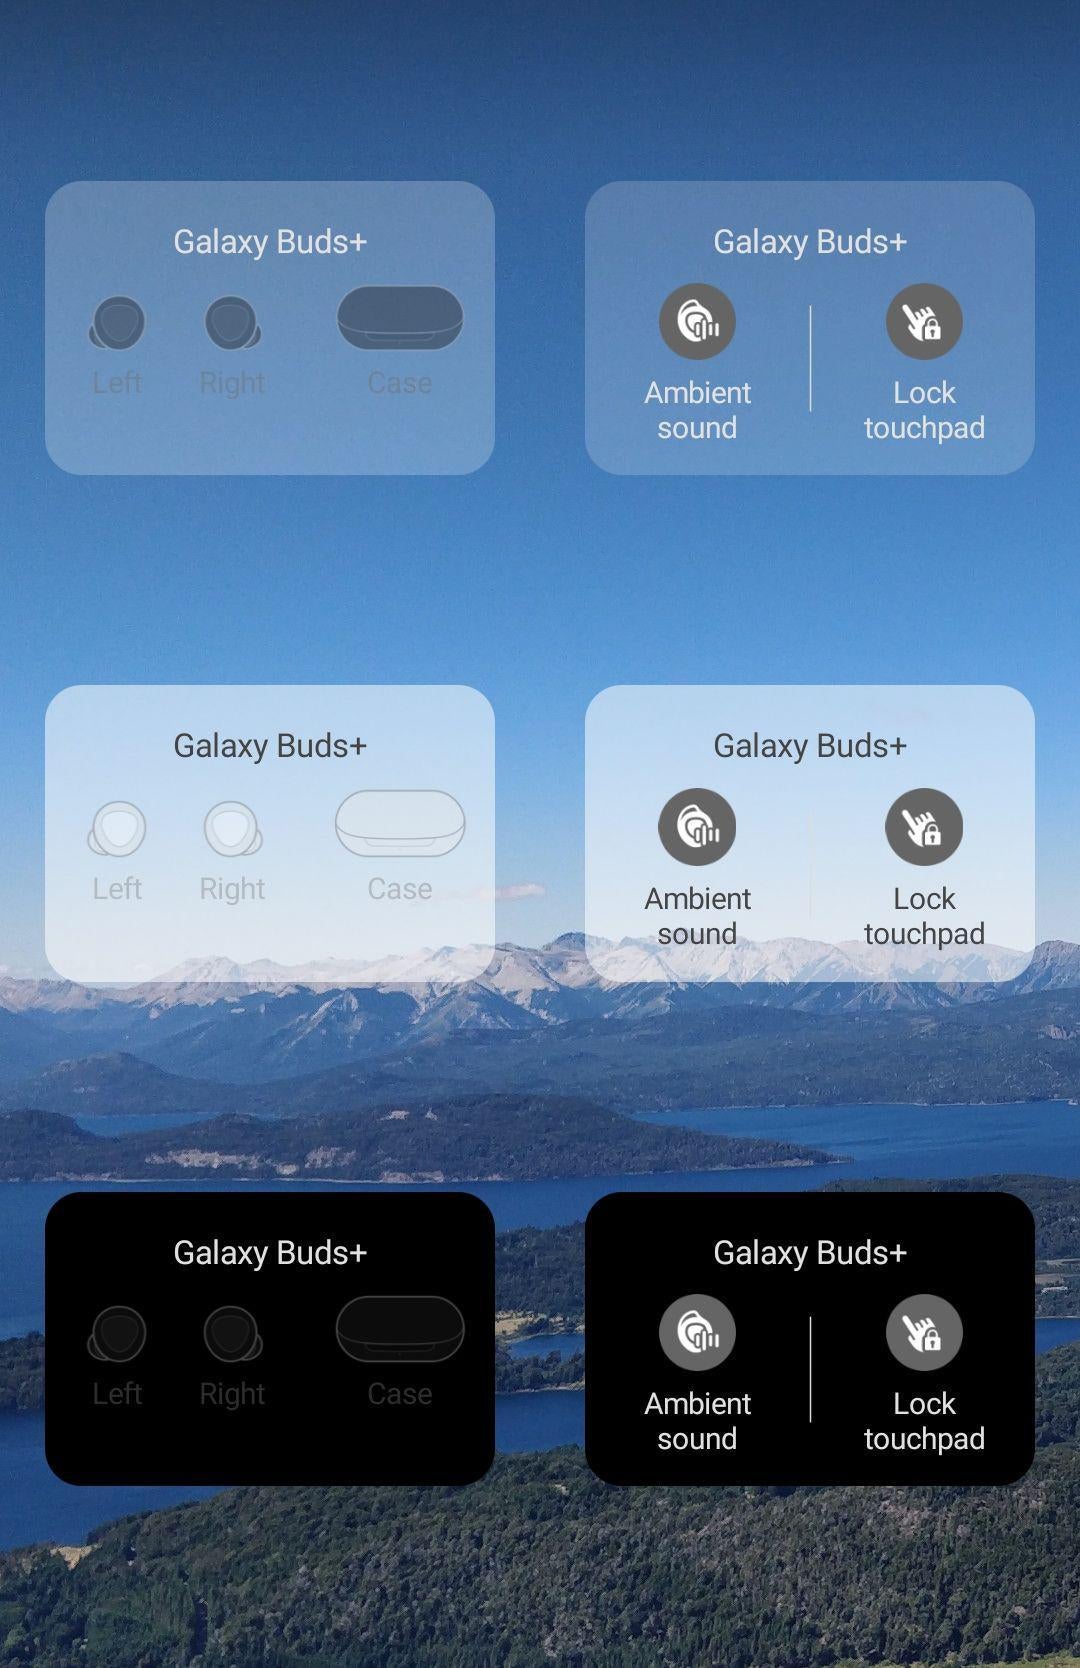 Samsung Galaxy Buds+ new widgets. Credits - Daniel_Himself - Samsung Galaxy Buds and Buds+ are getting new home screen widgets